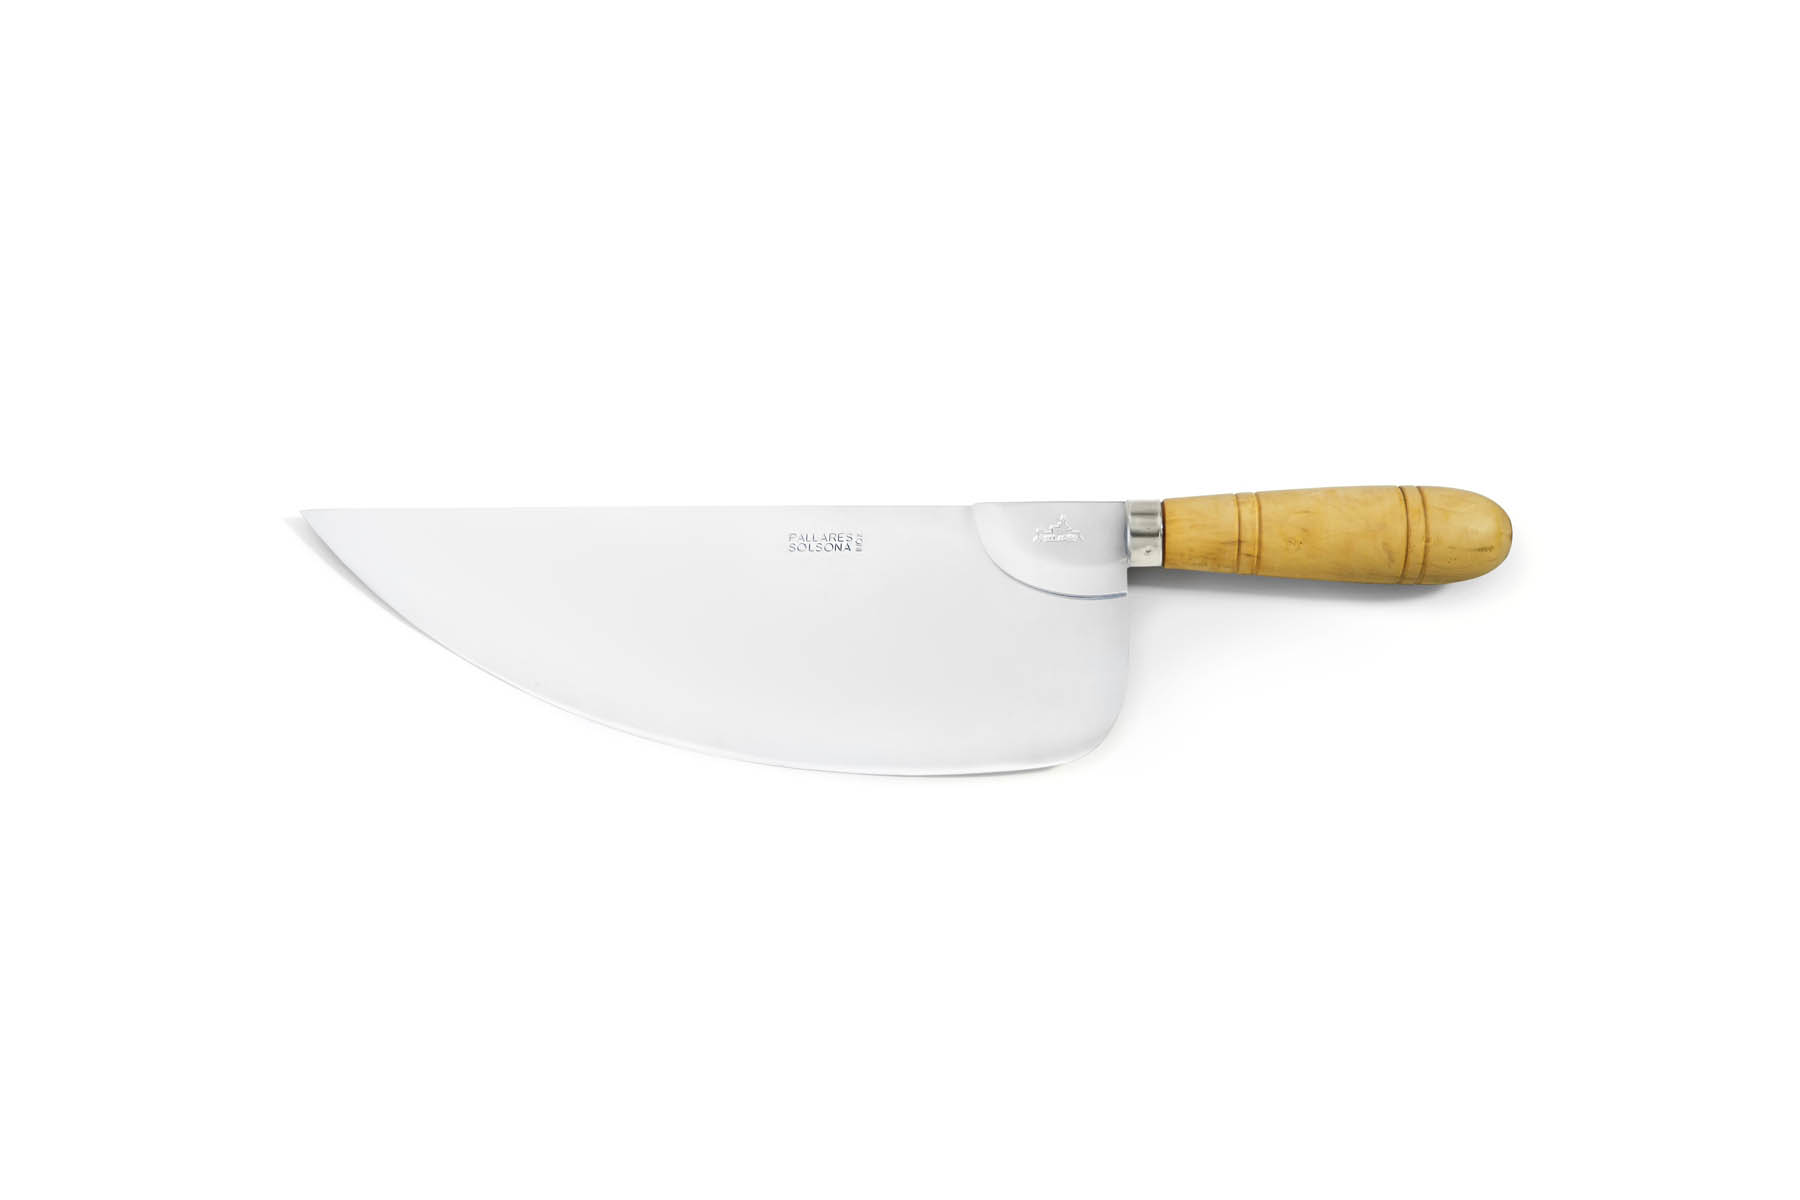 Couteau de cuisine Pallarès Solsona - Couteau couperet pour poisson 36 cm acier inox